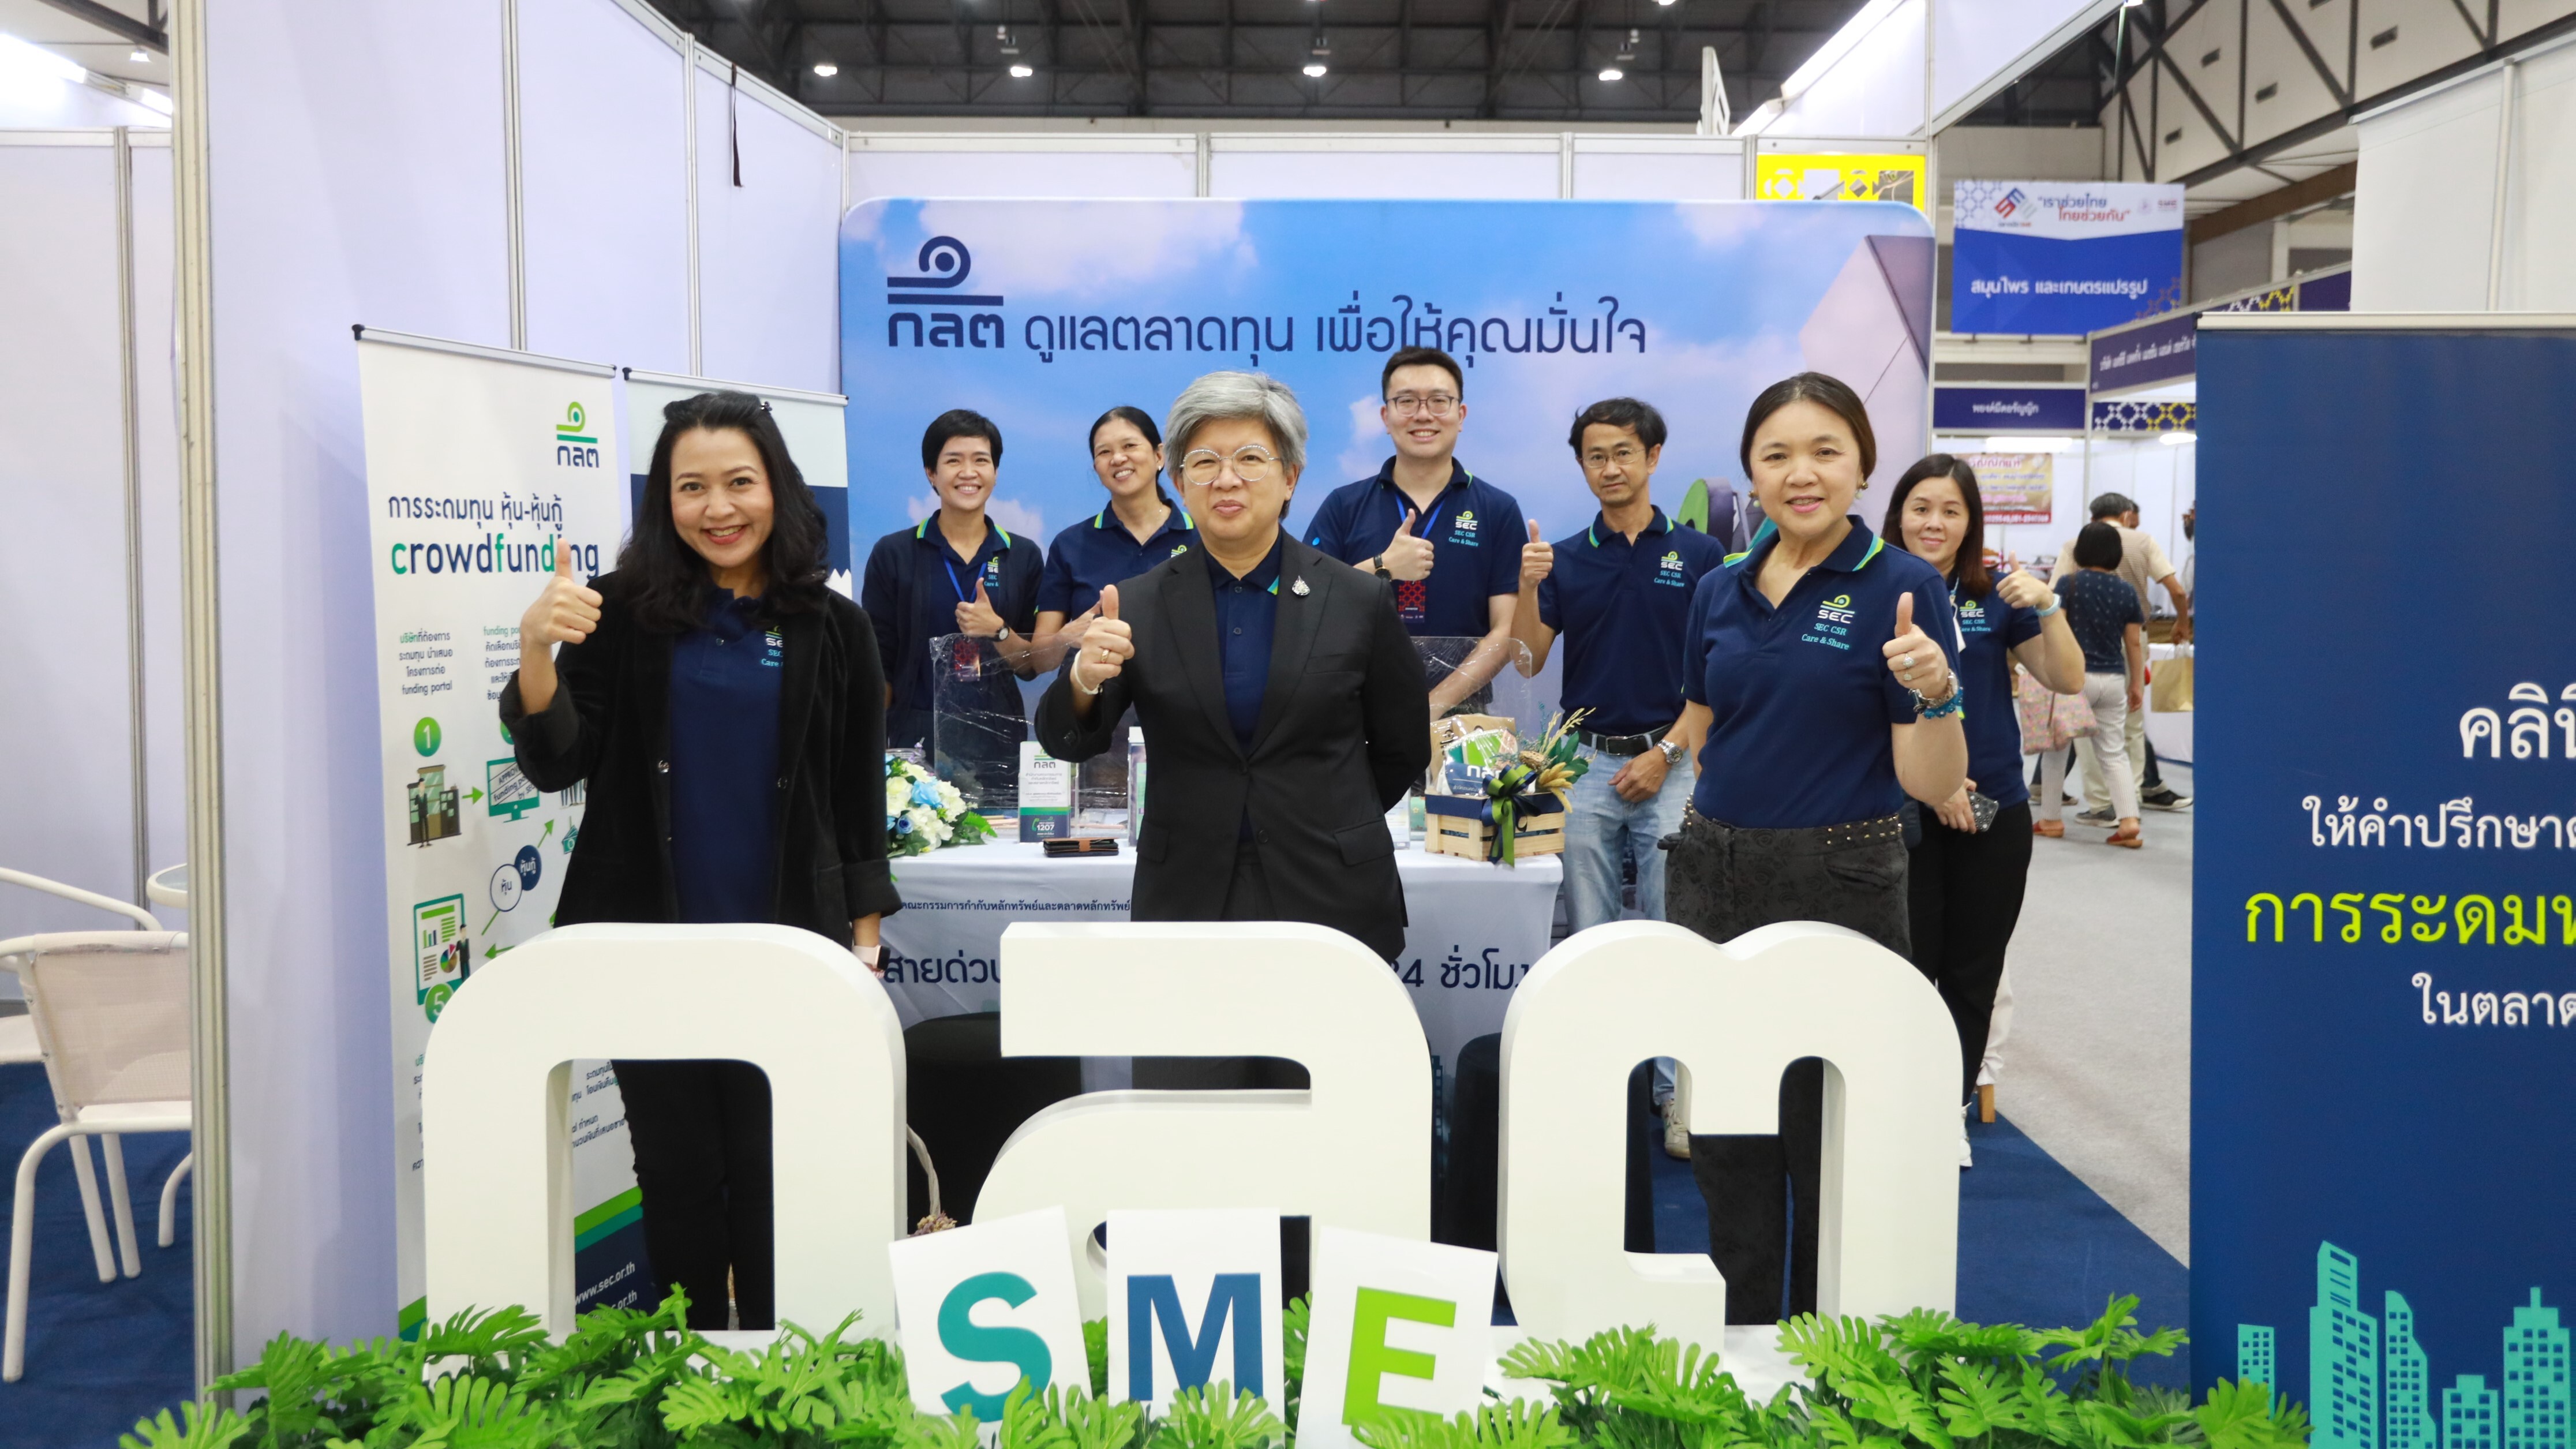 ก.ล.ต. เผยได้รับการตอบรับที่ดีจากการร่วมออกบูธในงานตลาดนัด SME “เราช่วยไทย ไทยช่วยกัน”